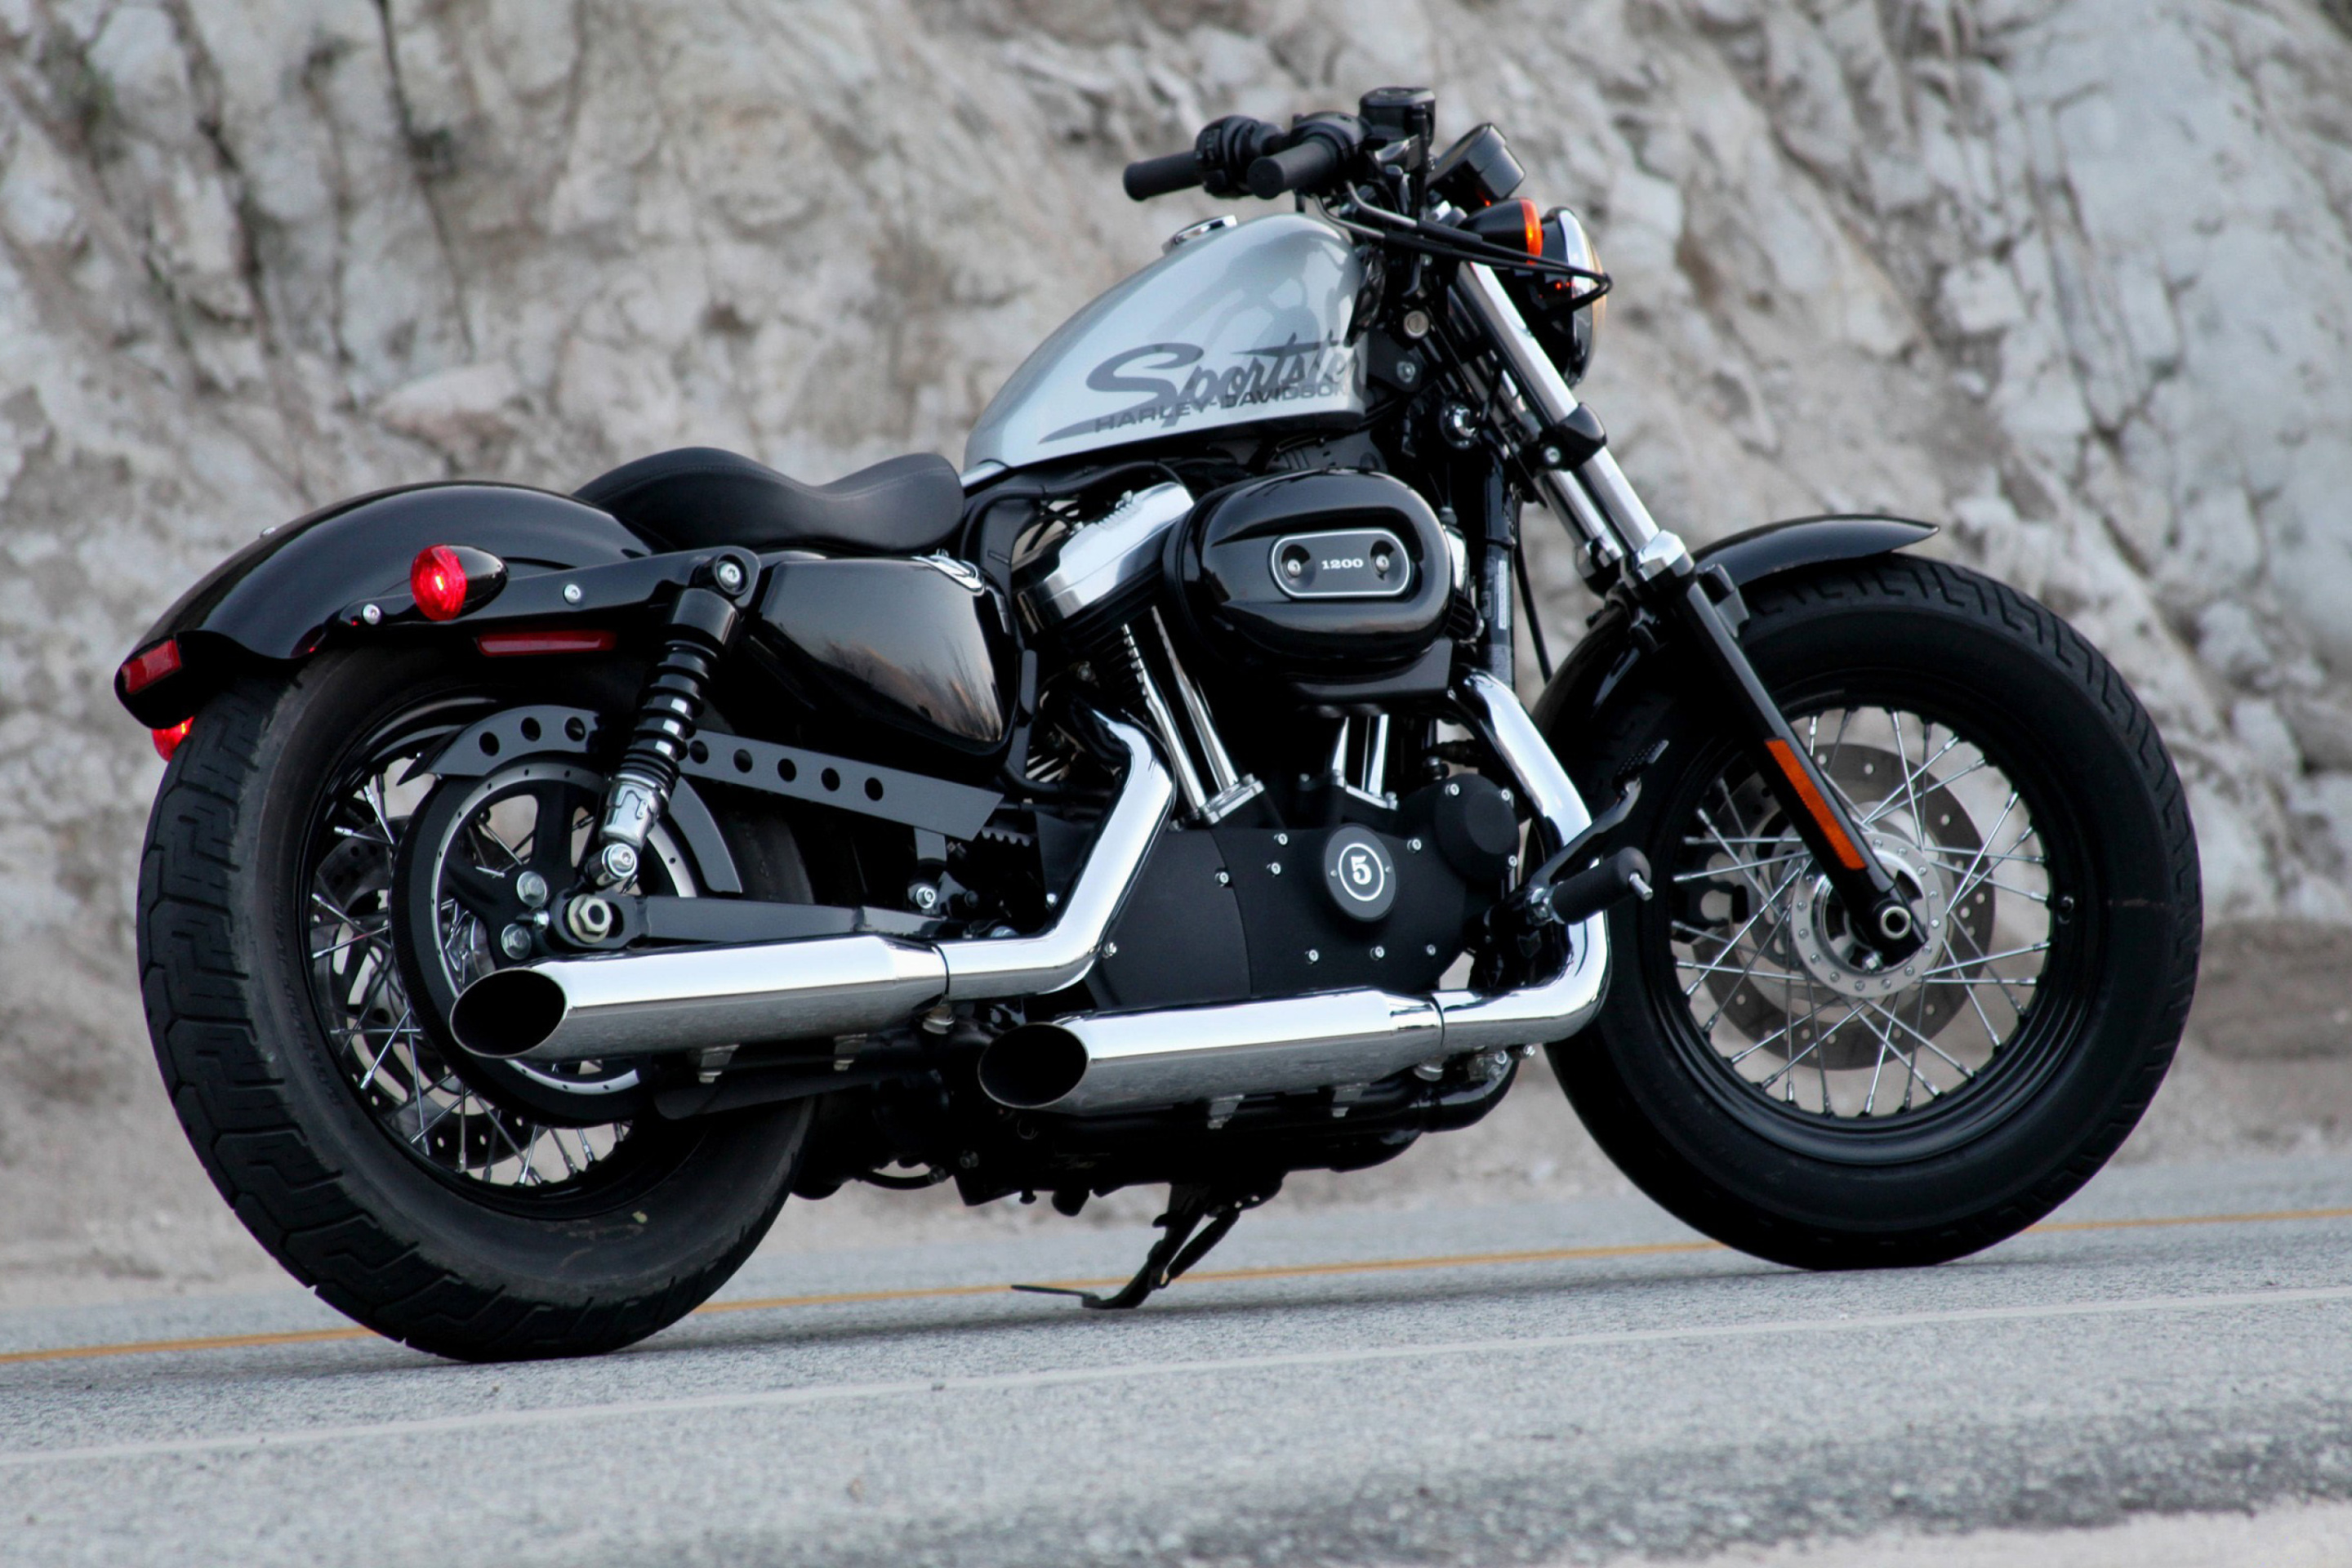 Sfondi Harley Davidson Sportster 1200 2880x1920